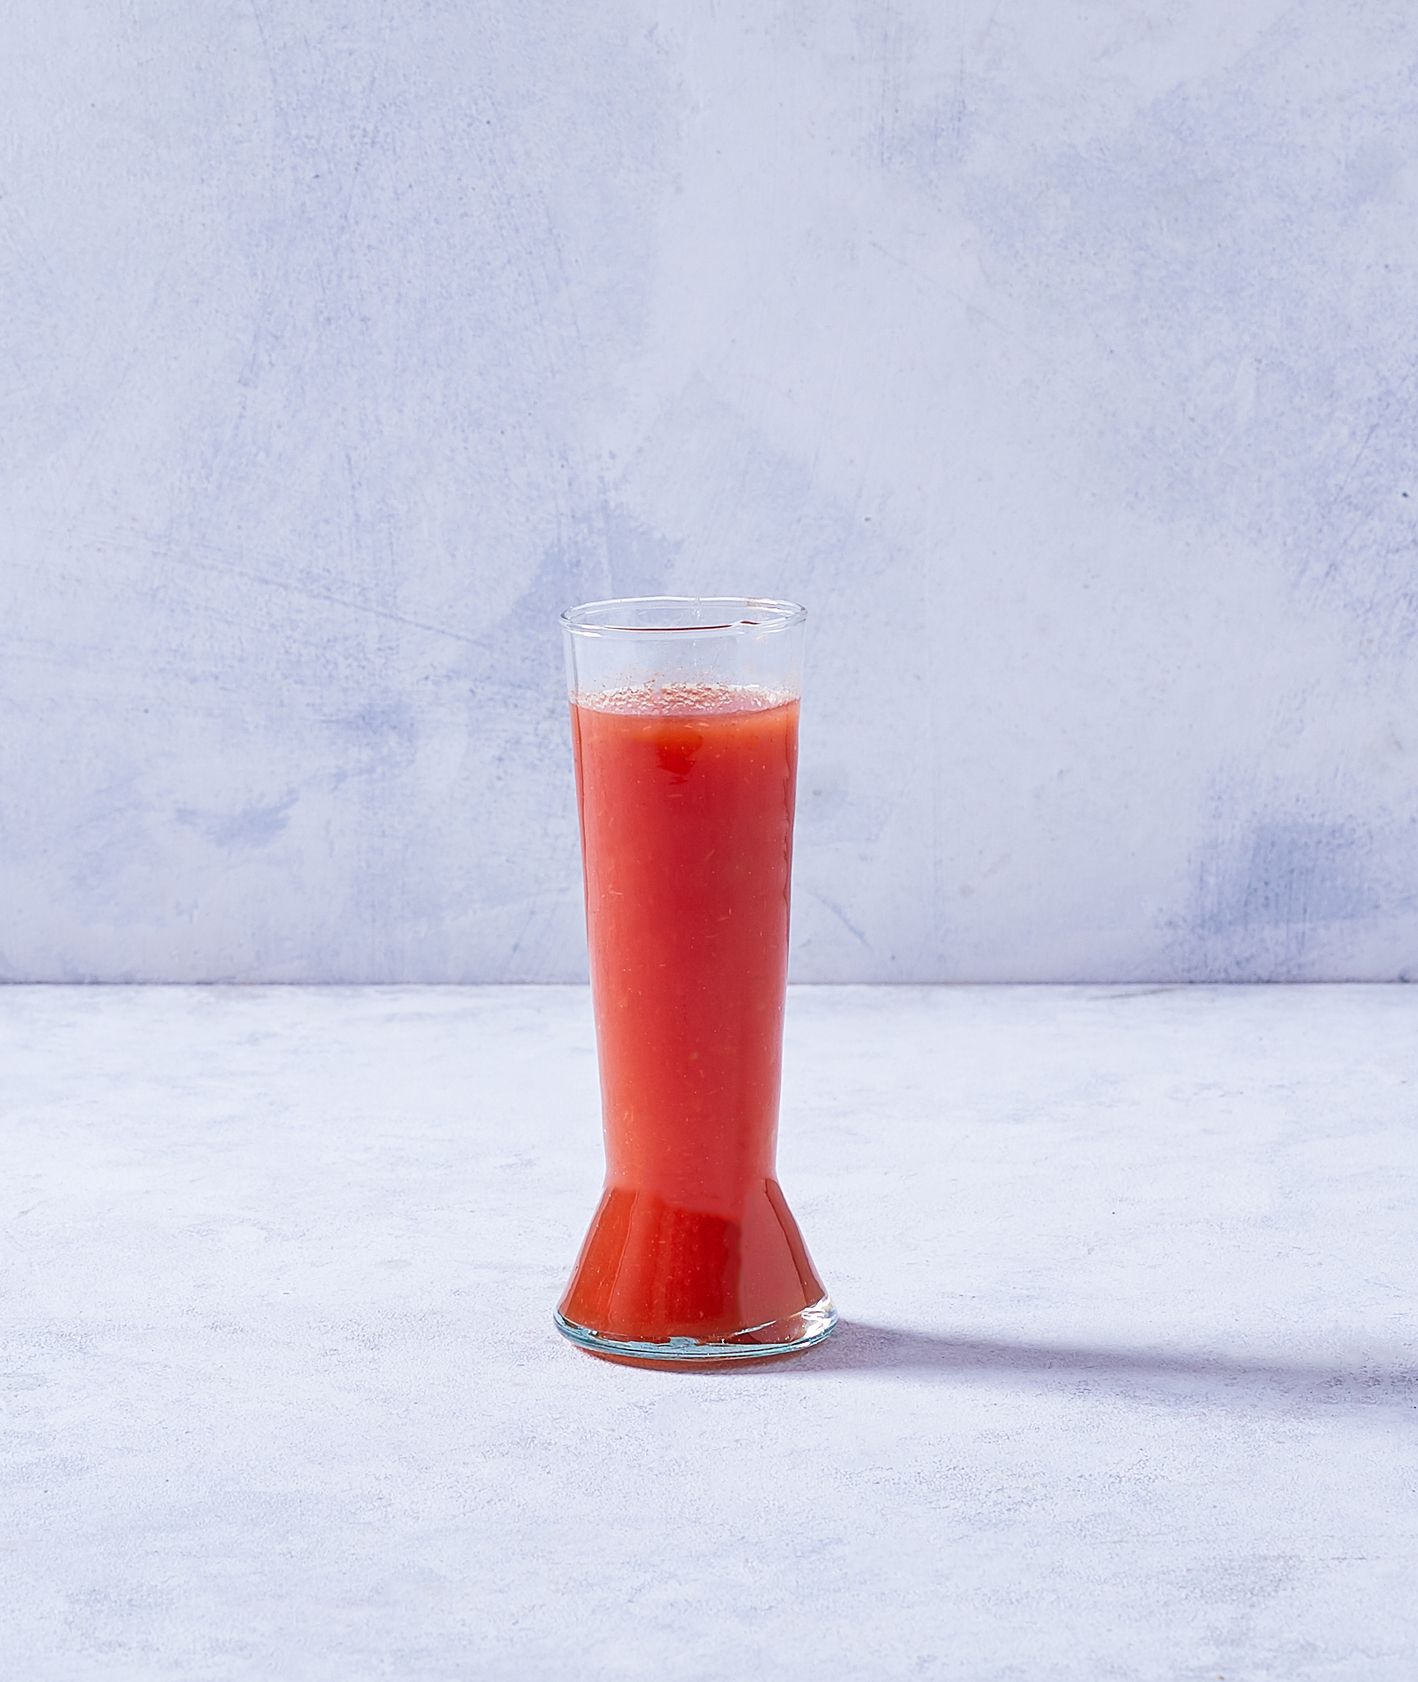 Domowy sok z pomidorów malinowych z dodatkiem pieprzu cayenne (fot. Marcin Lewandowski)